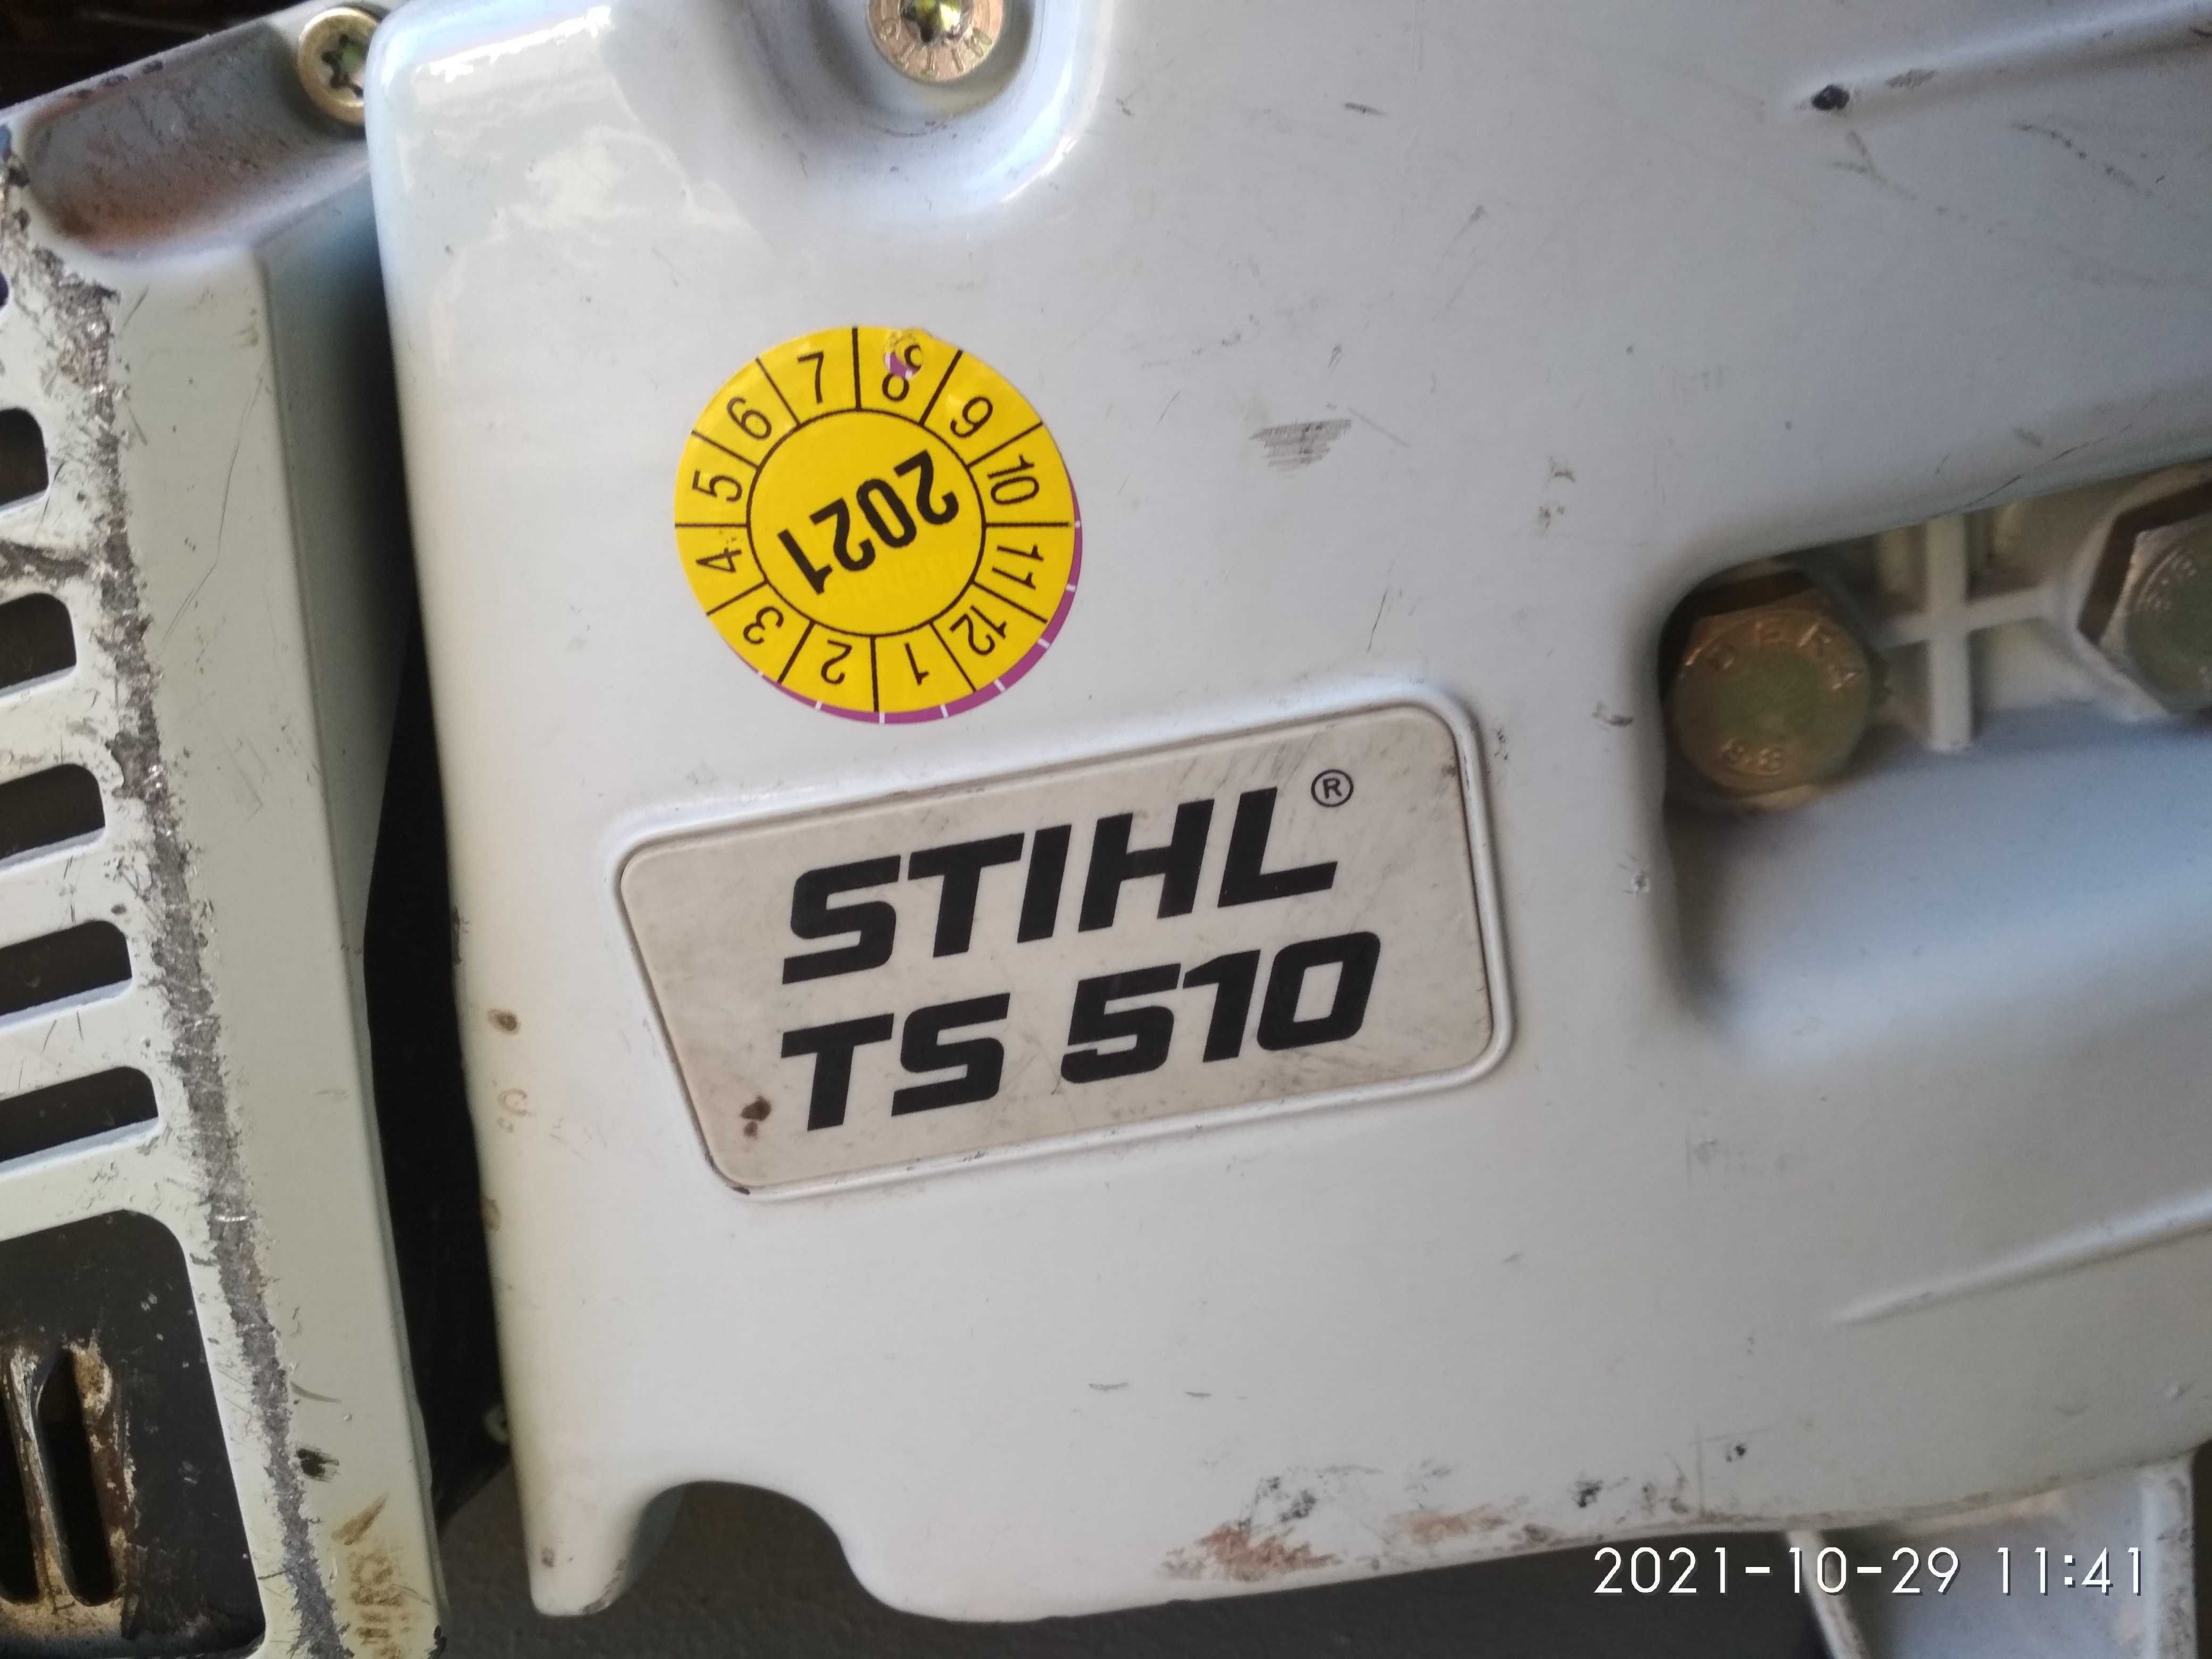 Piła spalinowa do cięcia betonu STHIL  TS 510 zamiana  na myjkę piłę